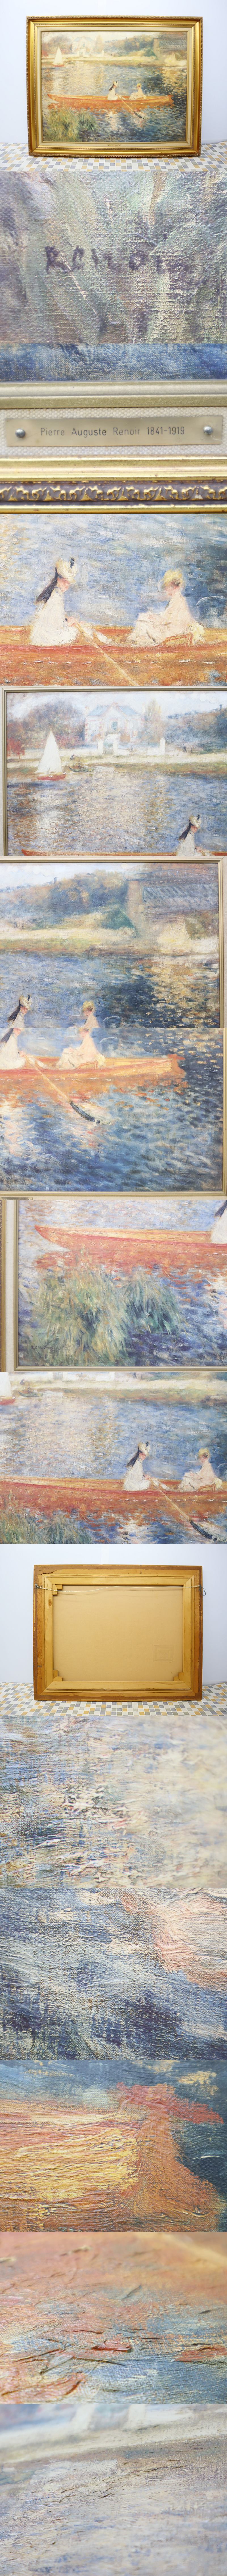 ∋ 大型｜セーヌ川の舟遊び 複製油彩画｜ピエール オーギュスト